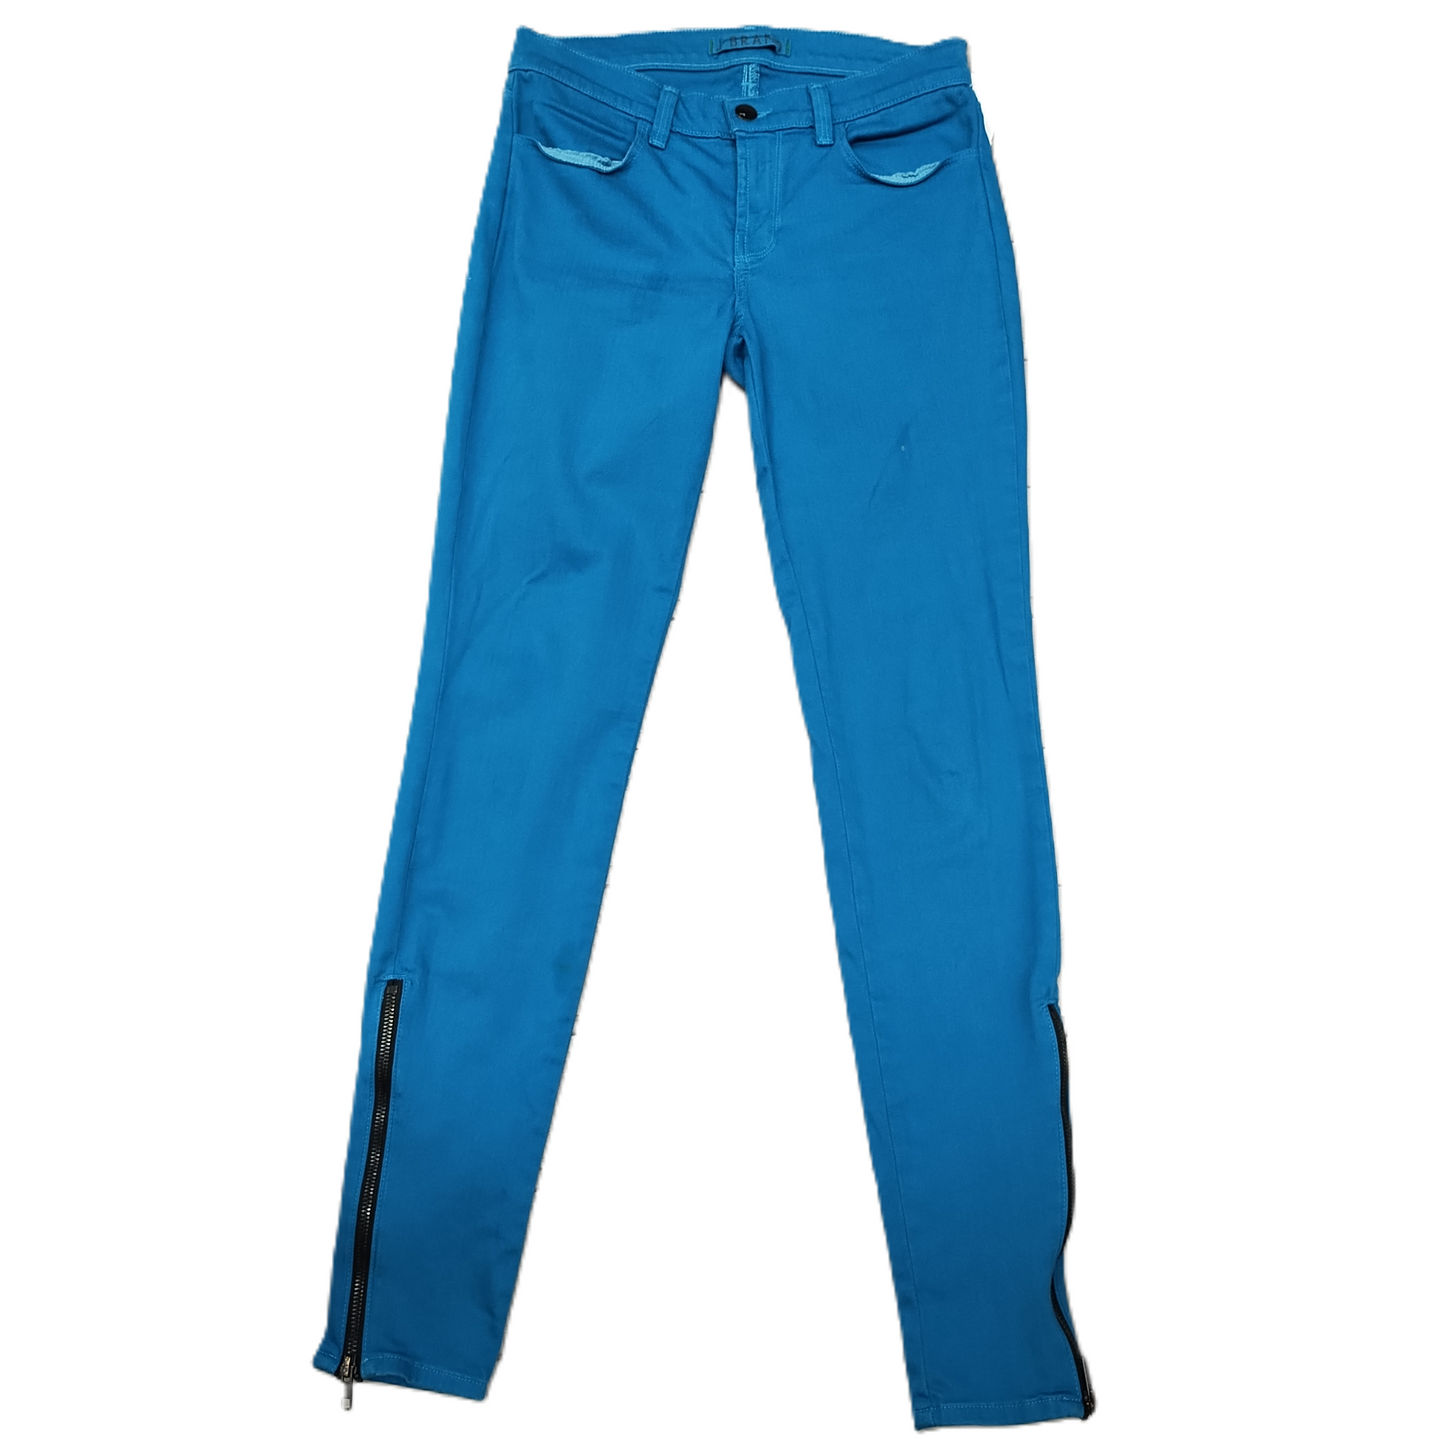 Pants Corduroy By J Brand  Size: 2